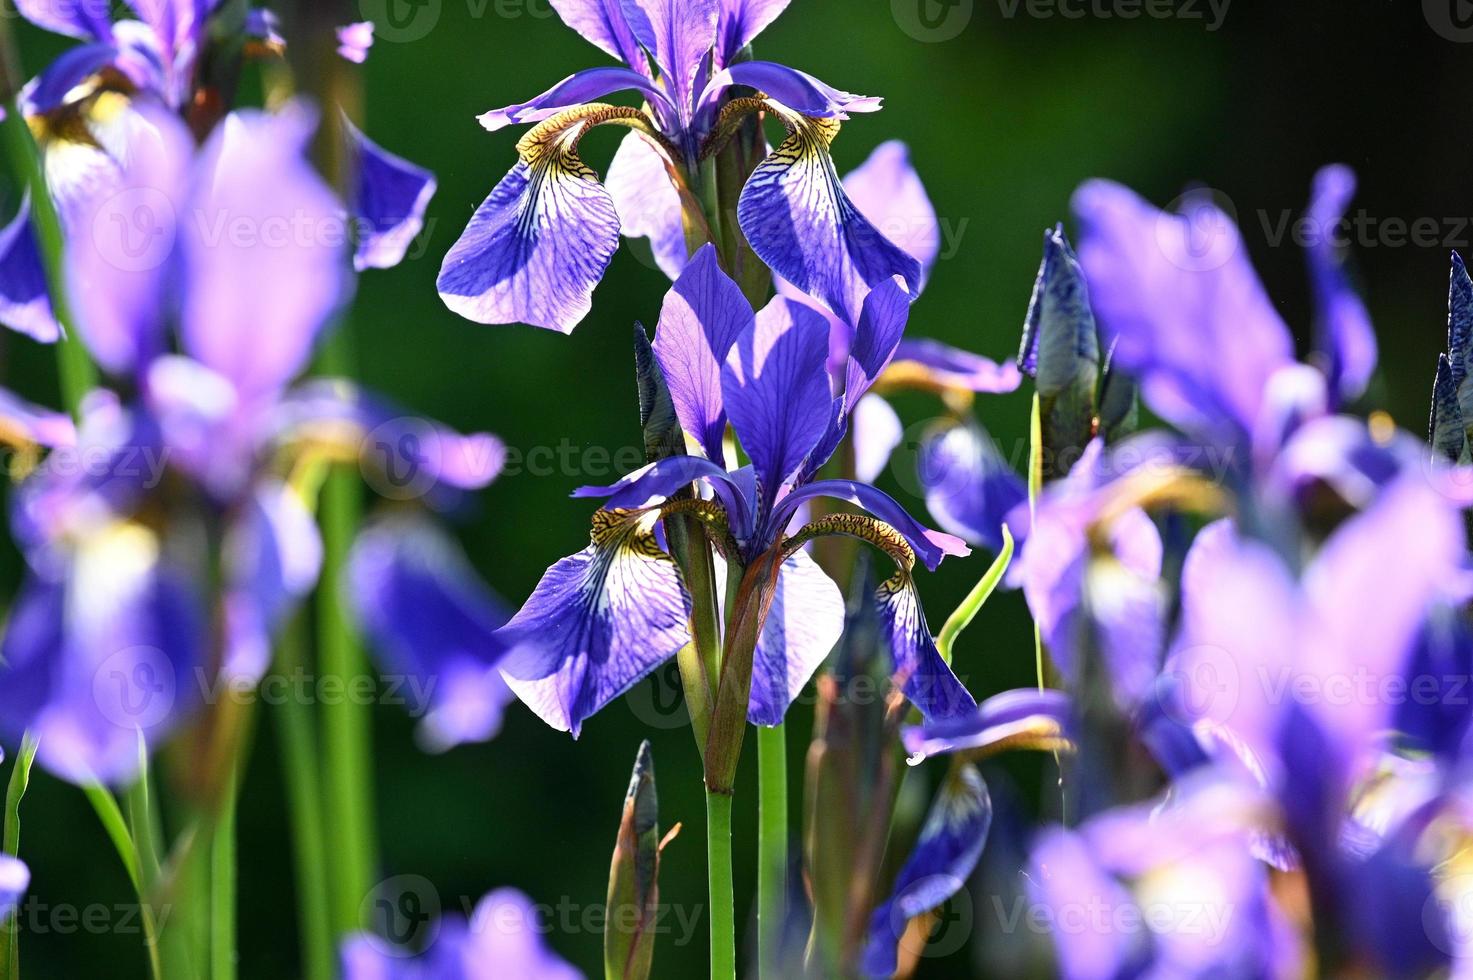 iris blu brillante a fiore piccolo foto